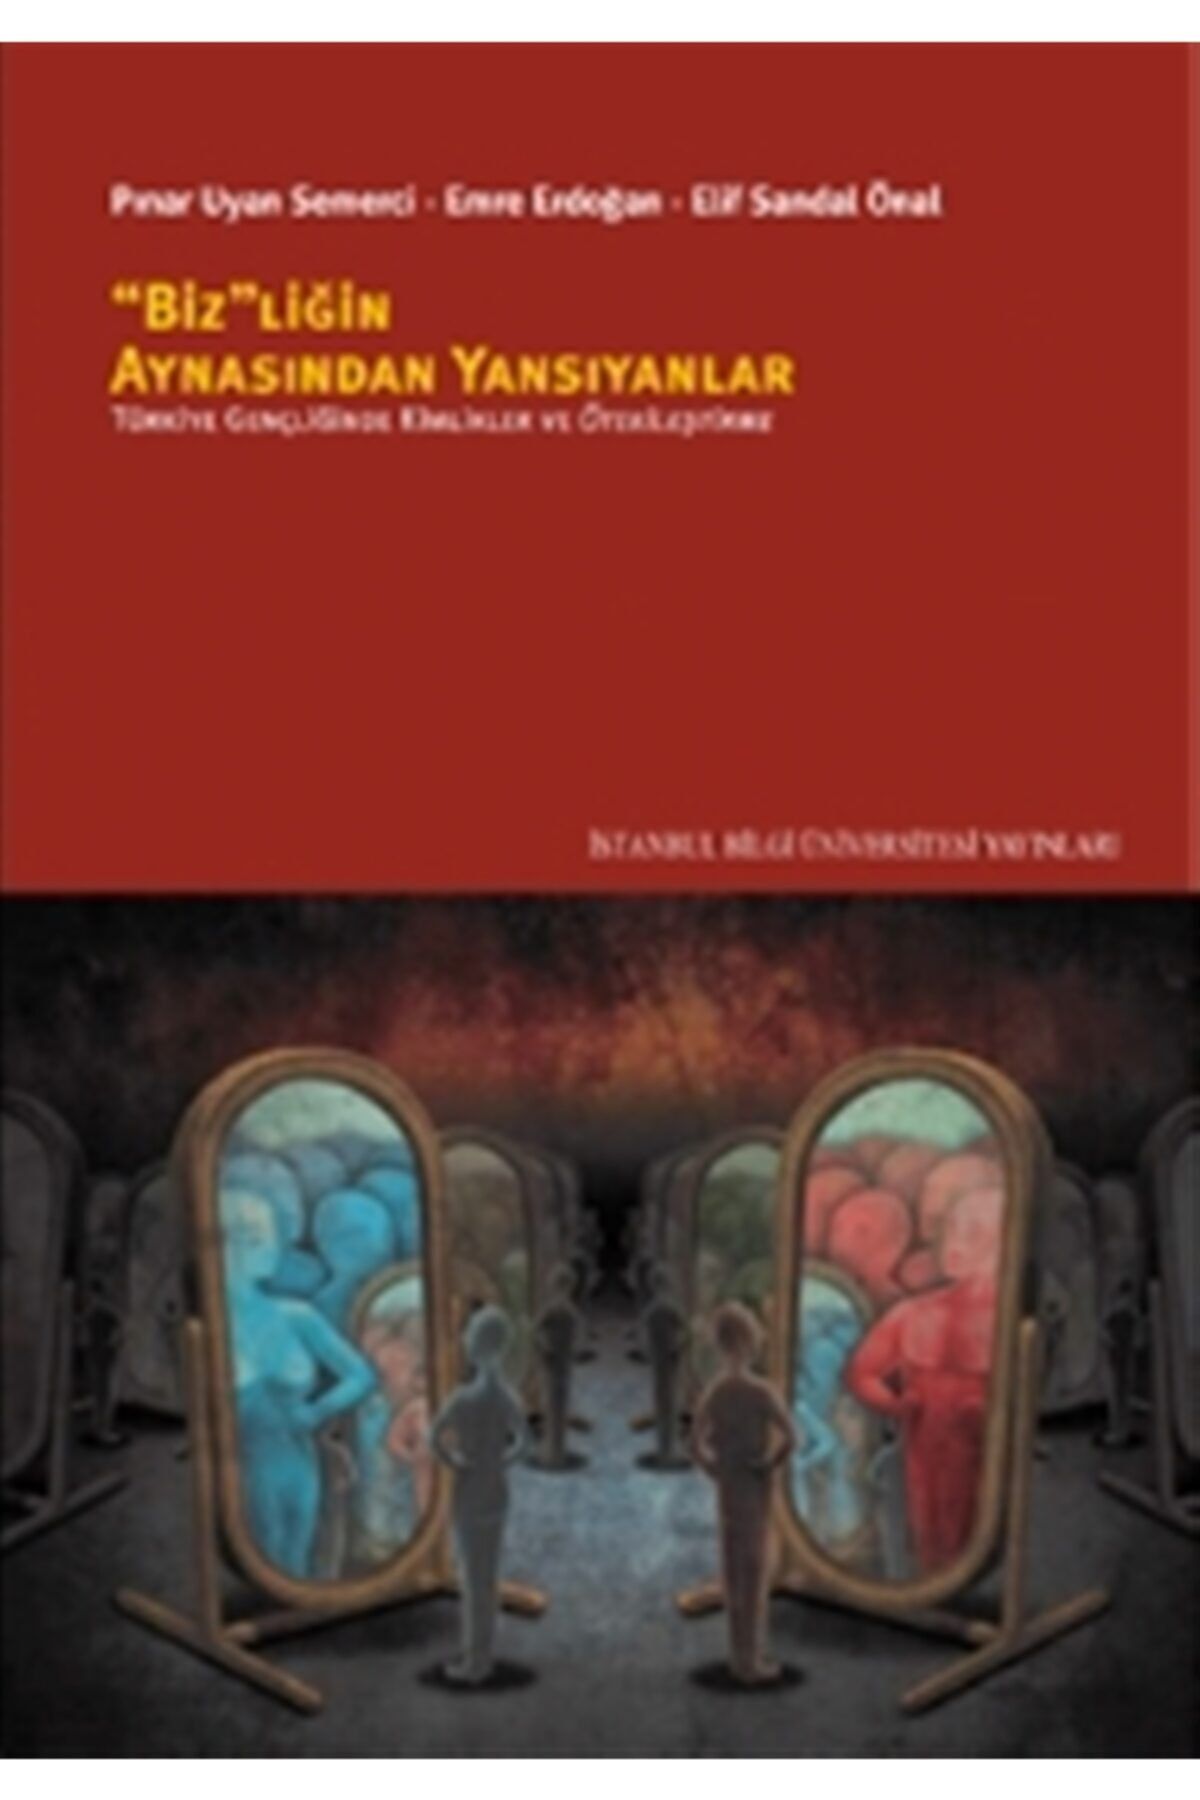 İstanbul Bilgi Üniversitesi Yayınları Bizliğin Aynasından Yansıyanlar - Pınar Uyan Semerci 9786053995012